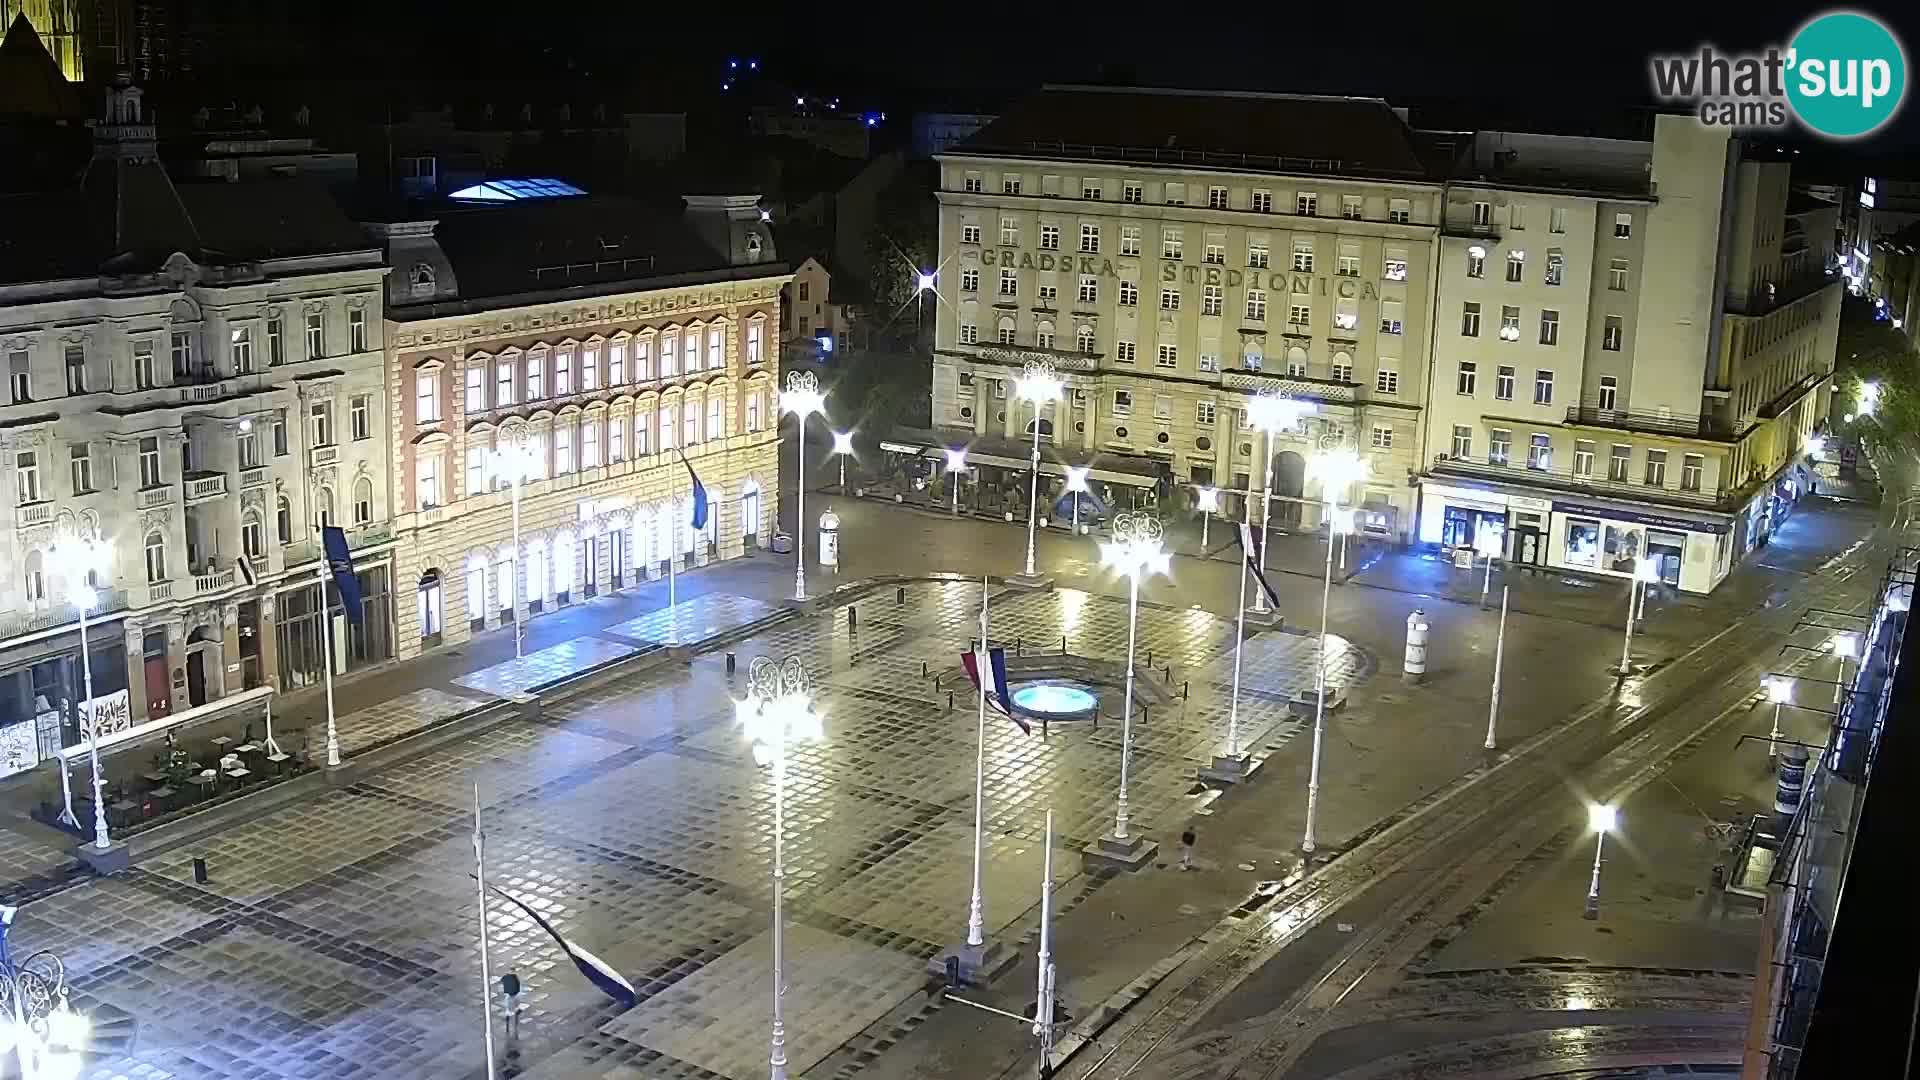 Zagreb – Bana Jelačića square panorama